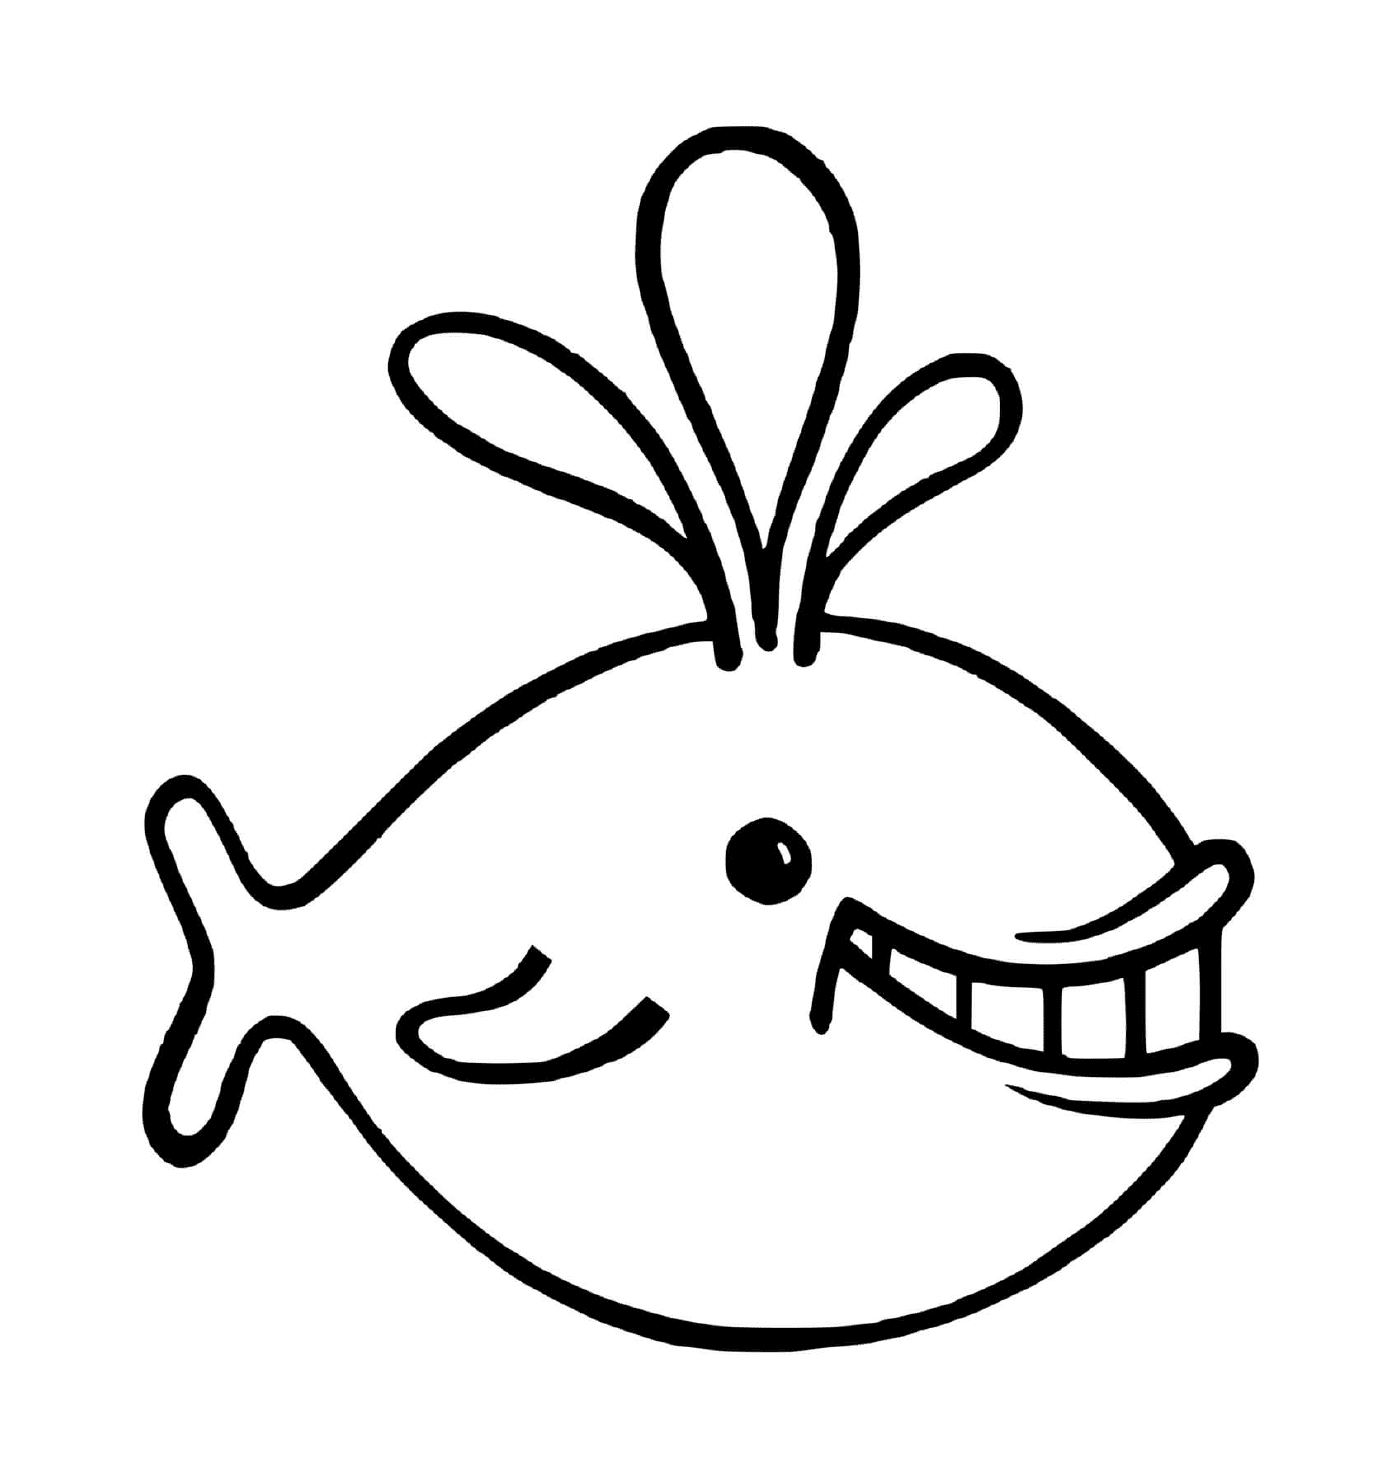  一只笑脸大笑的鱼 